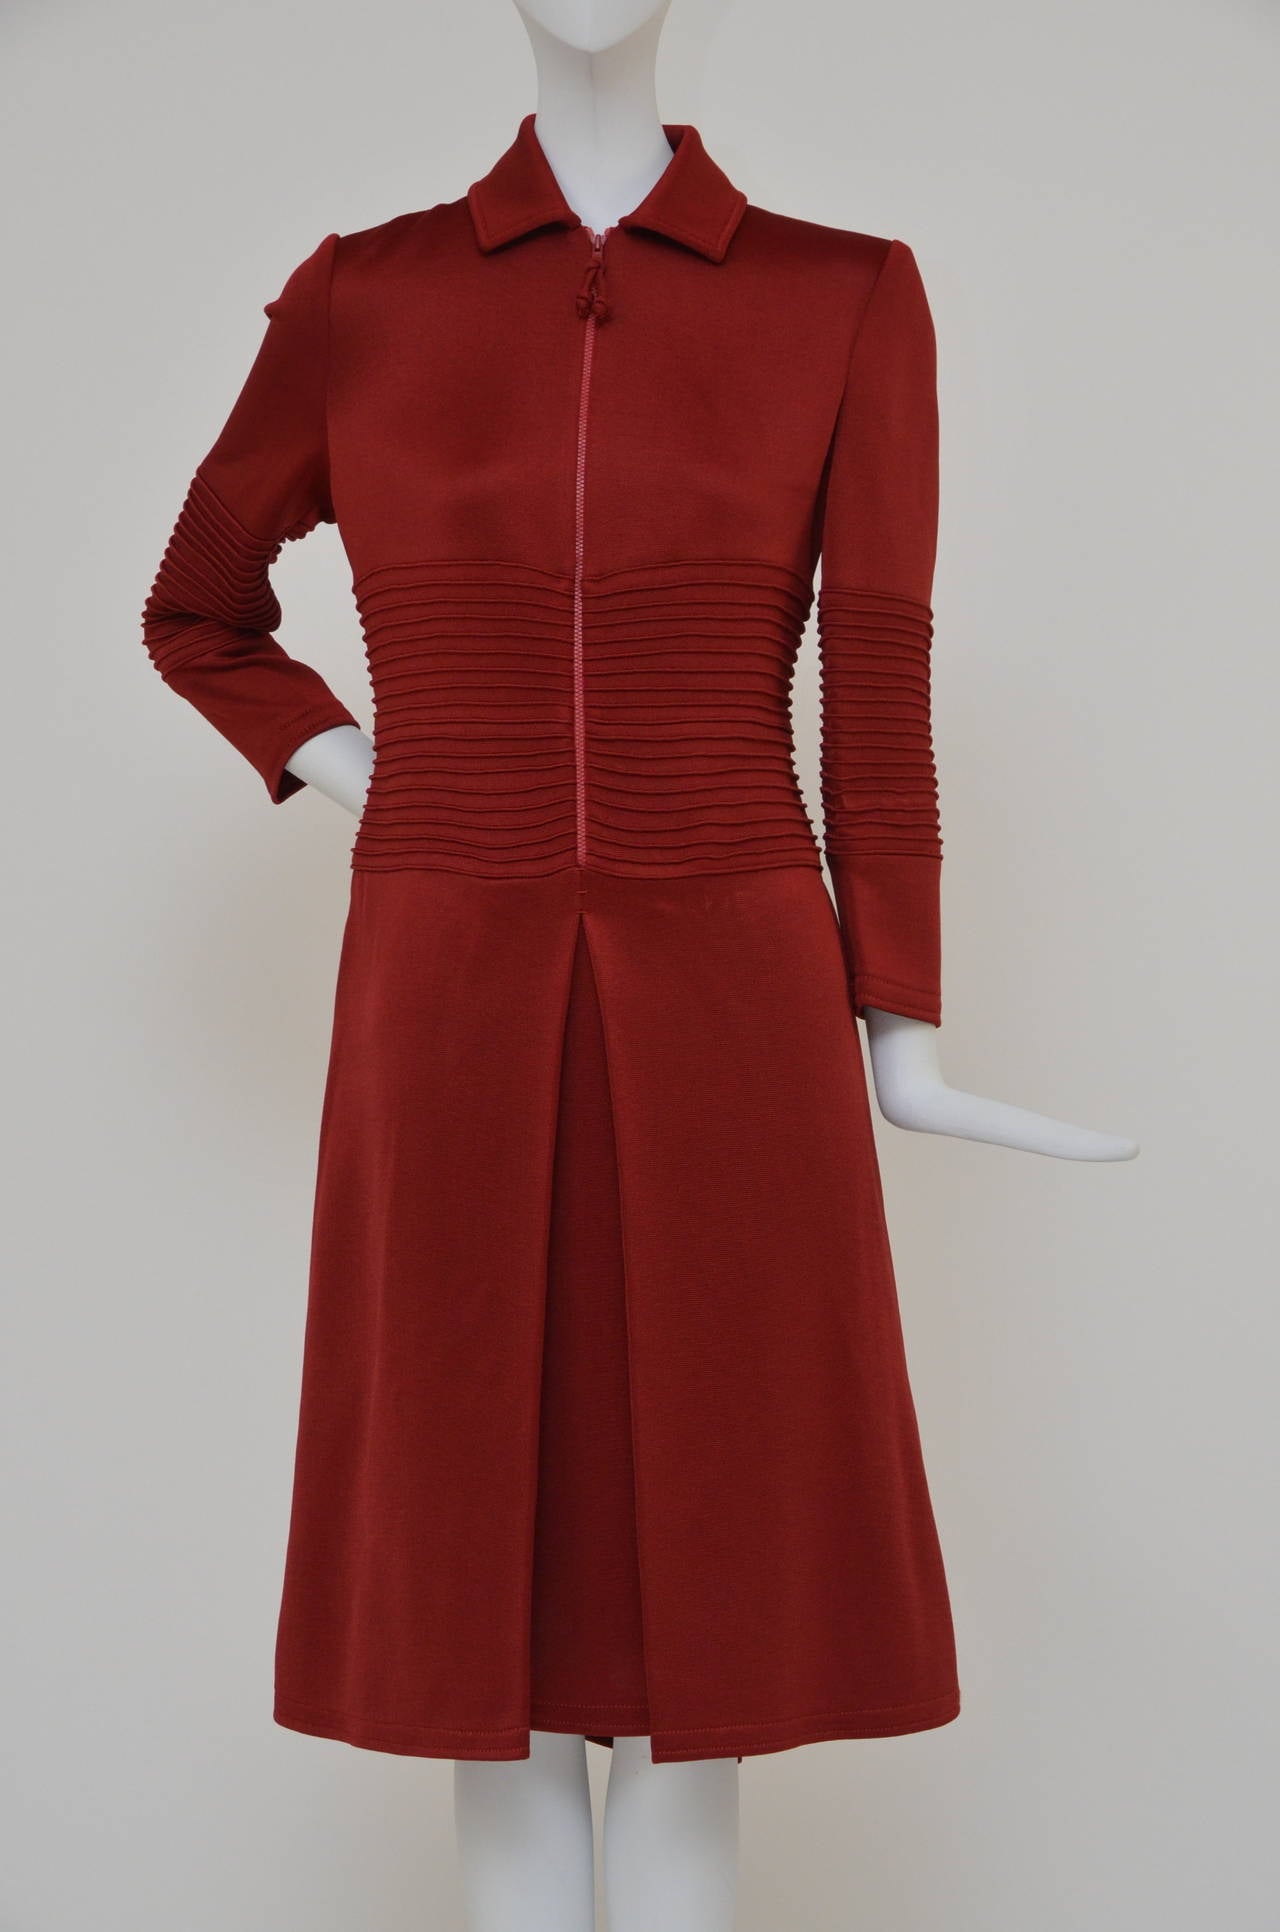 Look 7 du défilé Chado Ralph Rucci de l'automne 2011. Cette robe Chado Ralph Rucci rouge distinctif vous permet de contrôler votre couverture de l'élégance à l'audace grâce à un zip frontal astucieux. Pour une finition élégante et soignée, portez